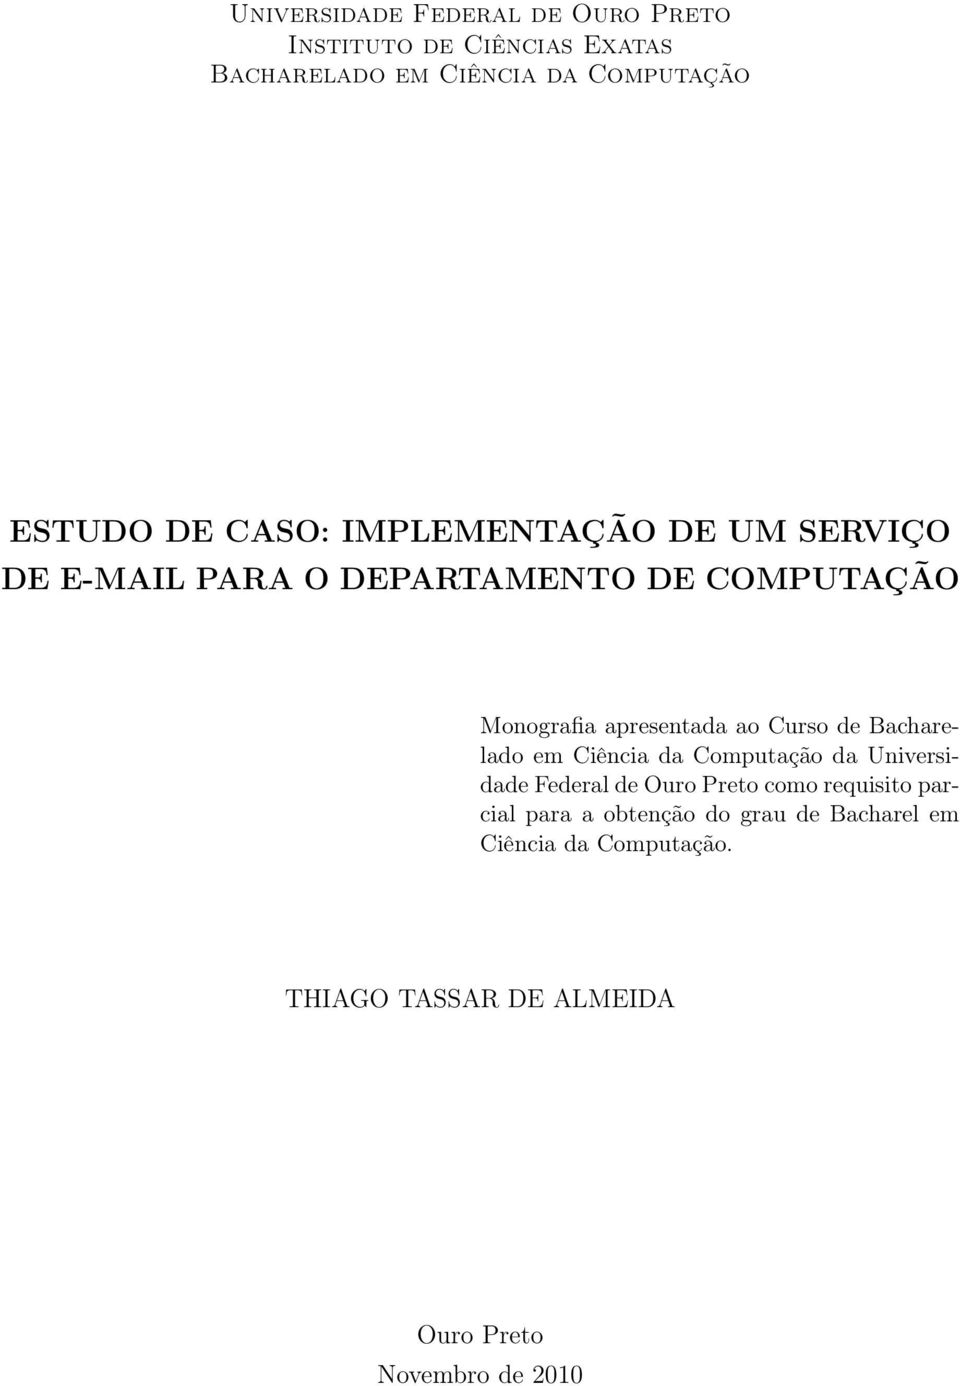 Curso de Bacharelado em Ciência da Computação da Universidade Federal de Ouro Preto como requisito parcial